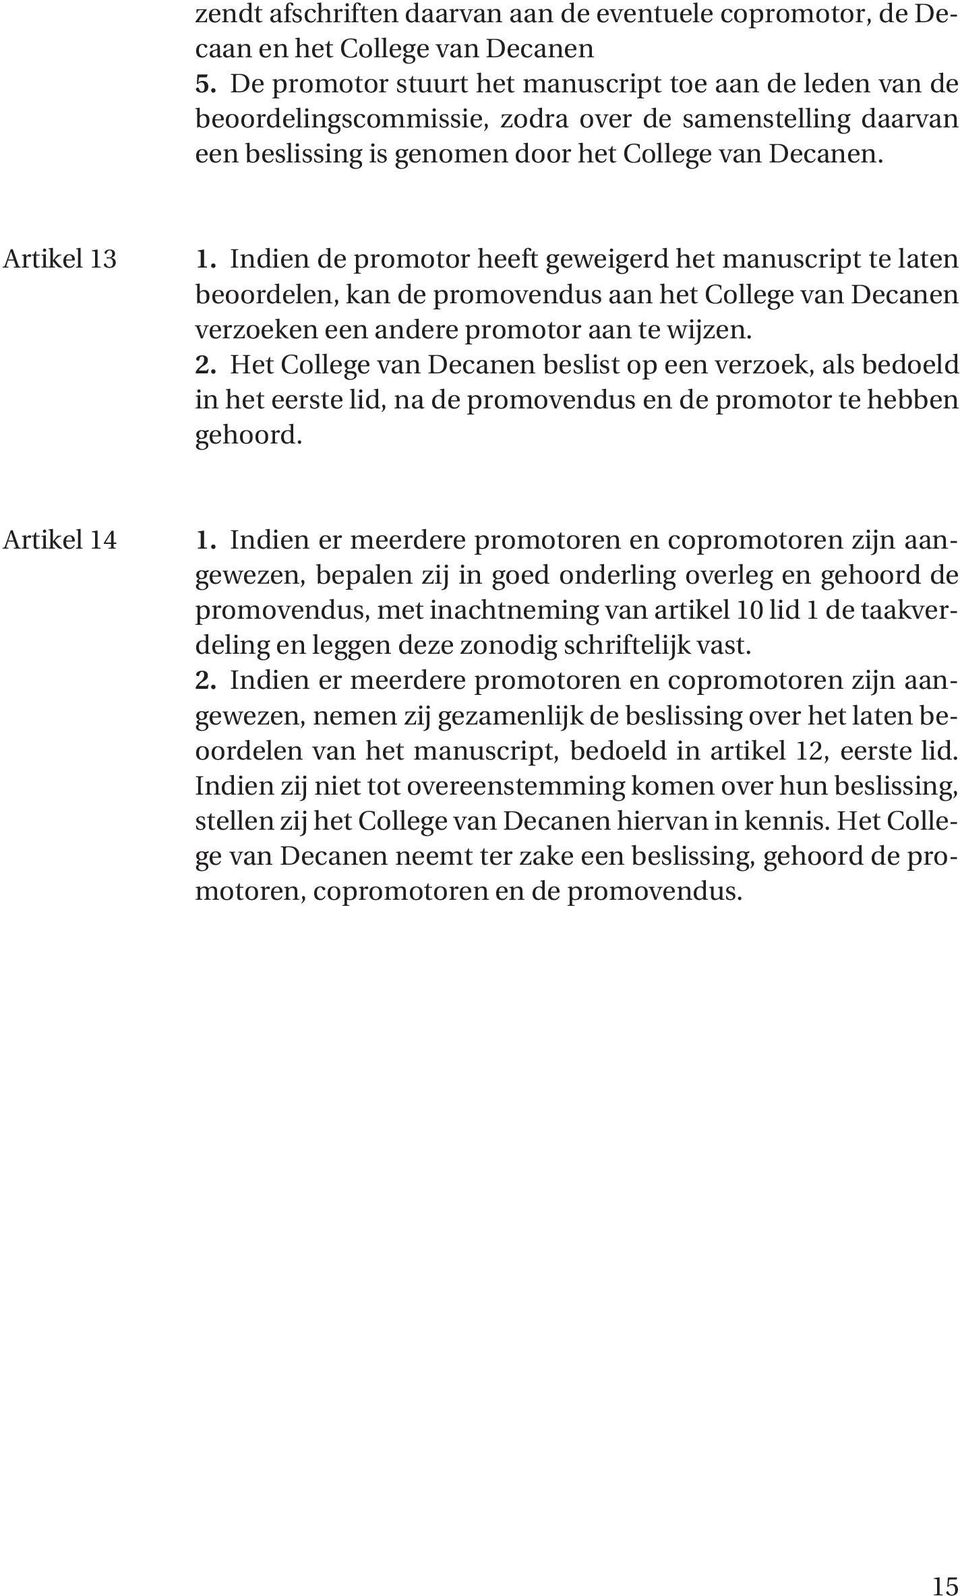 Indien de promotor heeft geweigerd het manuscript te laten beoordelen, kan de promovendus aan het College van Decanen verzoeken een andere promotor aan te wijzen. 2.